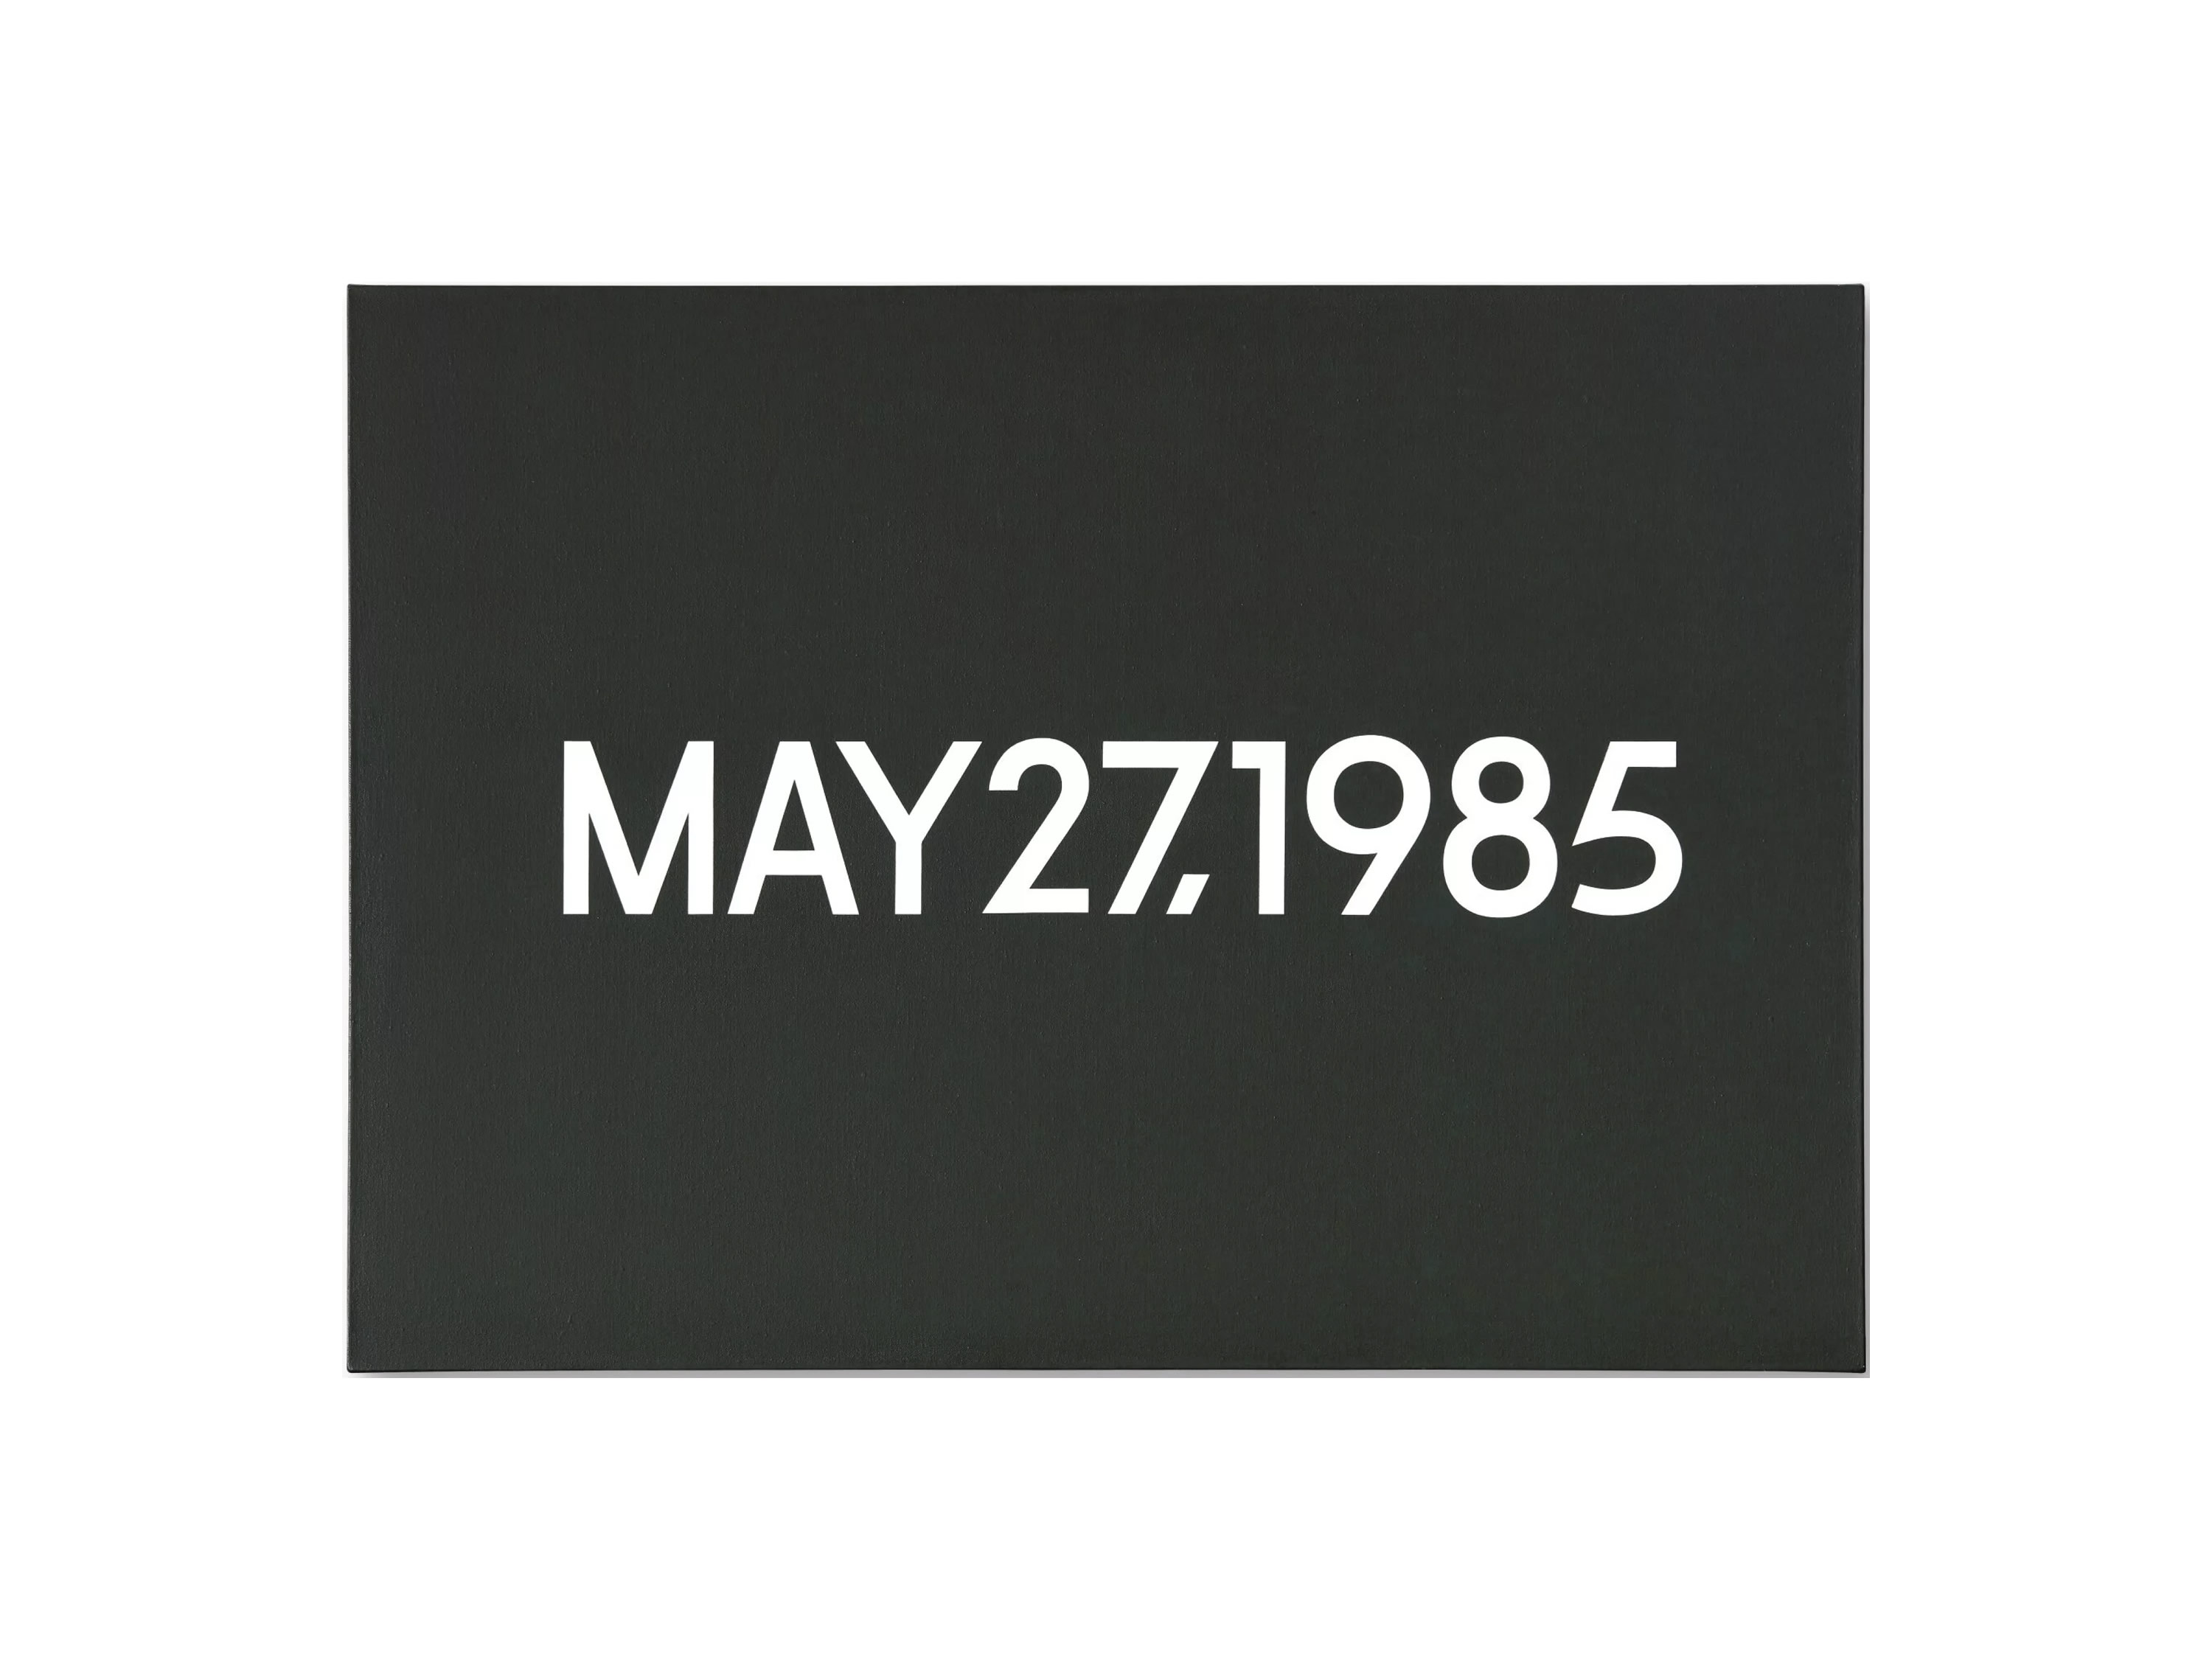 On Kawara: MAY 27, 1985, Liquitex on canvas, 66.5 x 91.6 cm. 1985.